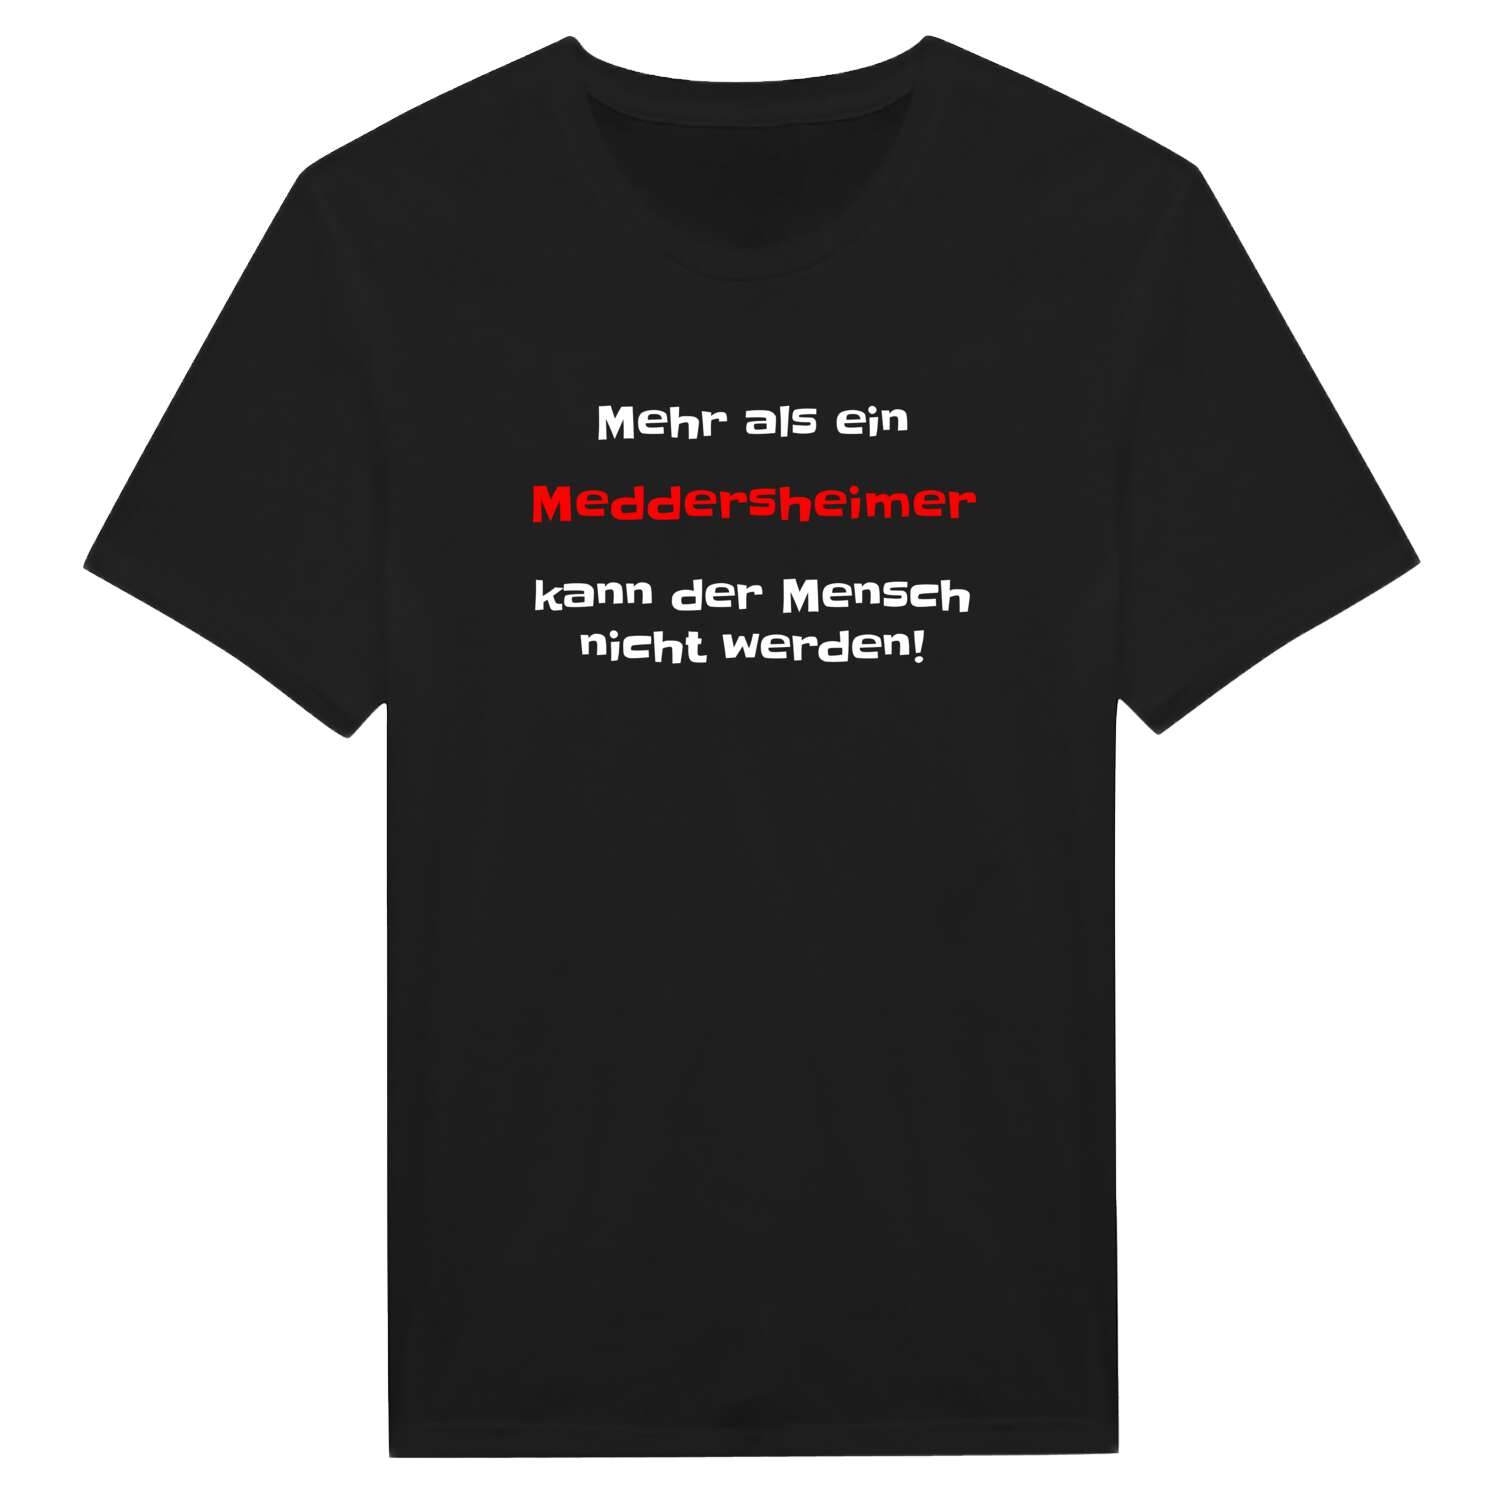 Meddersheim T-Shirt »Mehr als ein«